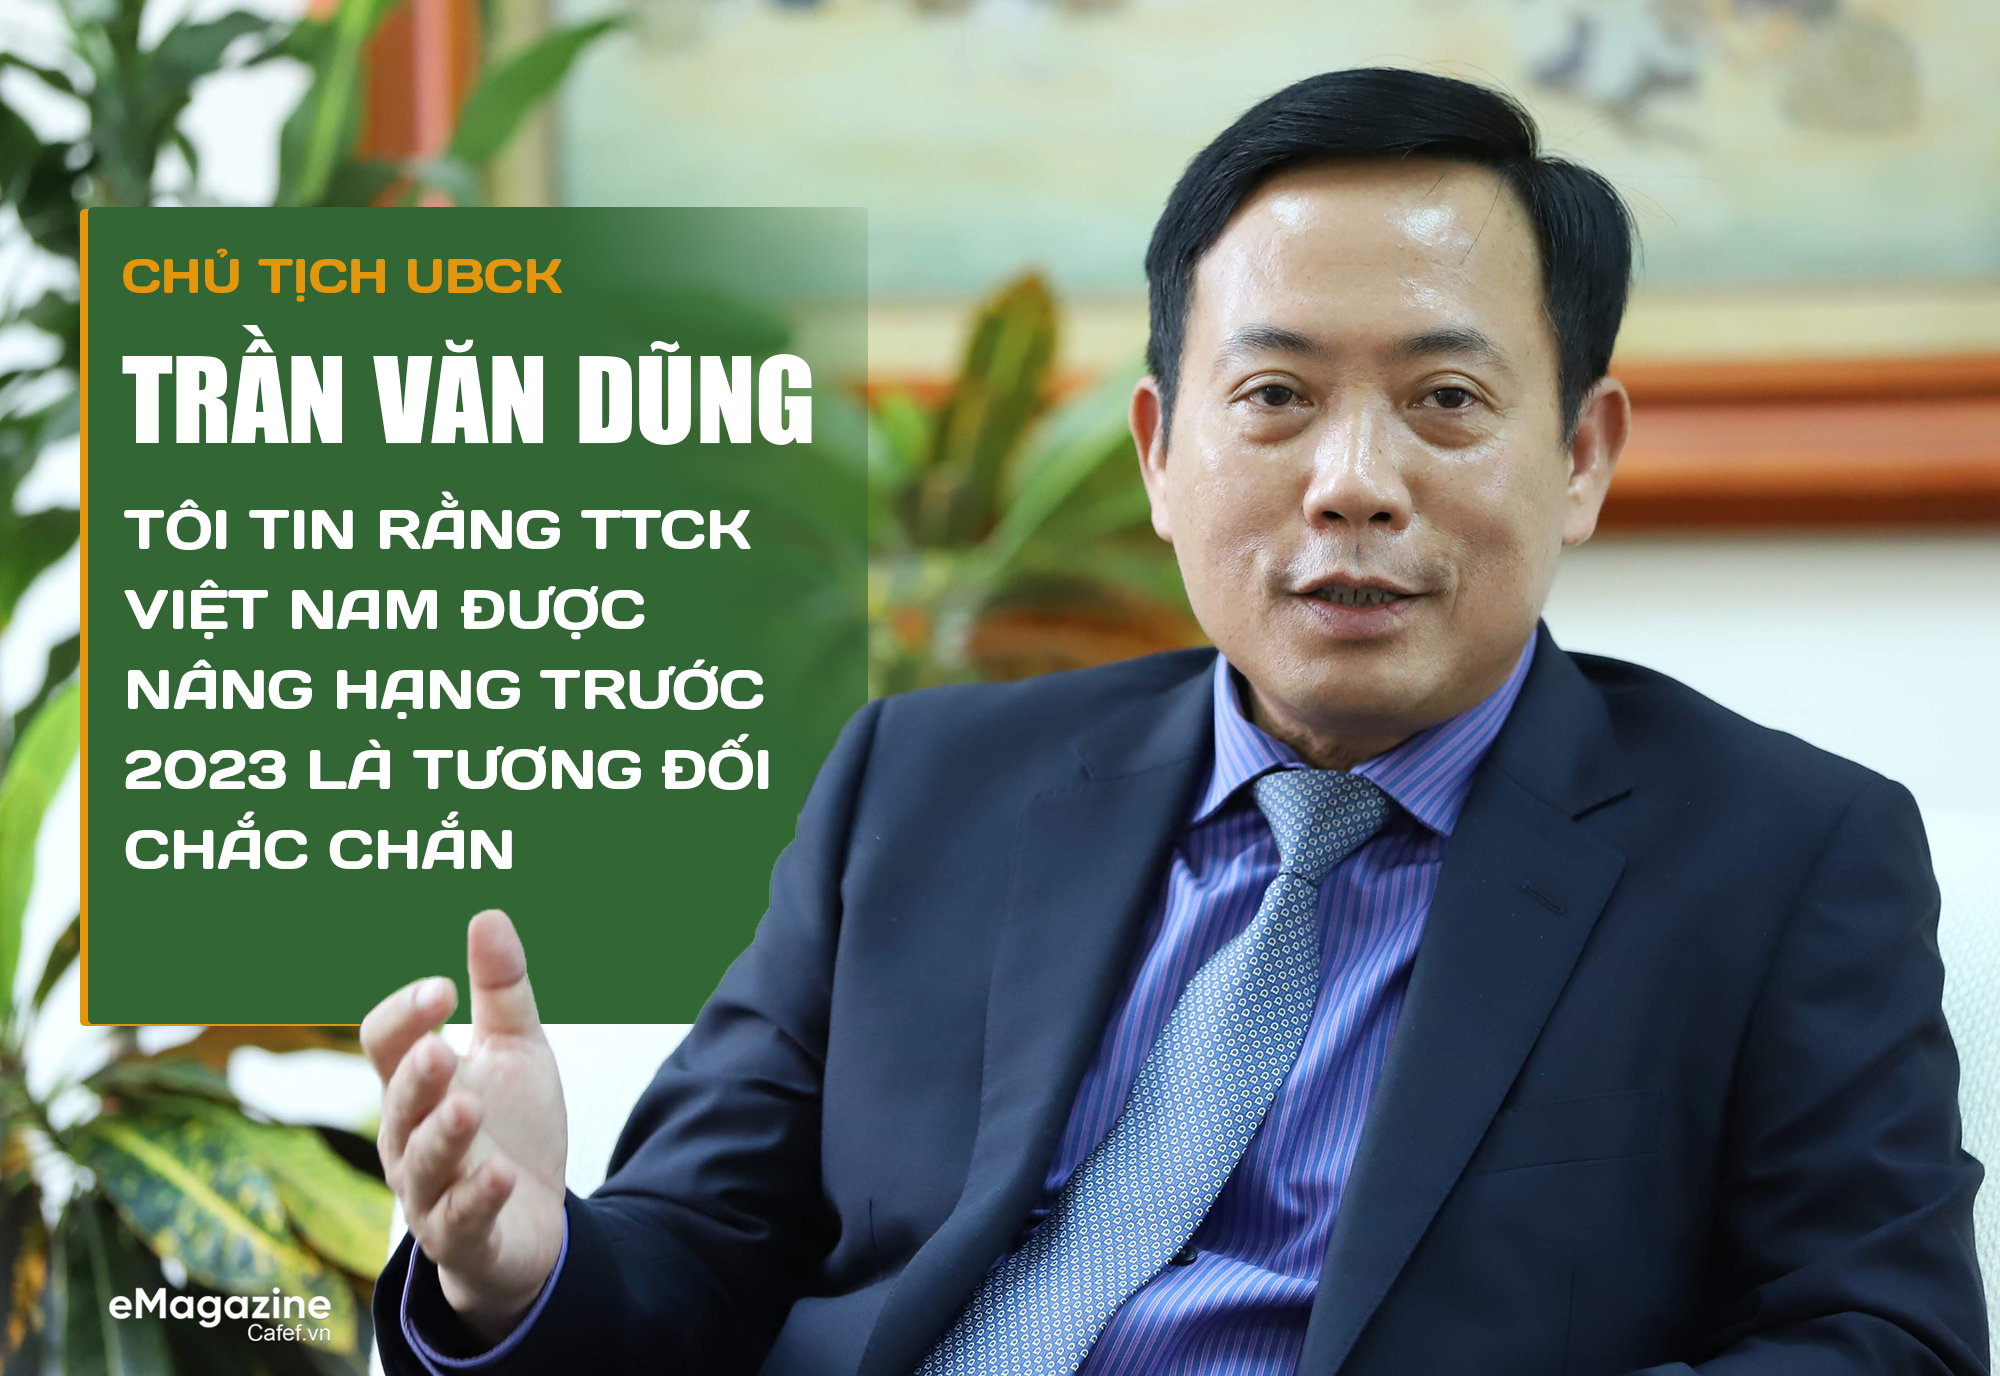 Chủ tịch UBCK Trần Văn Dũng: T&#244;i tin rằng TTCK Việt Nam được n&#226;ng hạng trước 2023 l&#224; tương đối chắc chắn - Ảnh 1